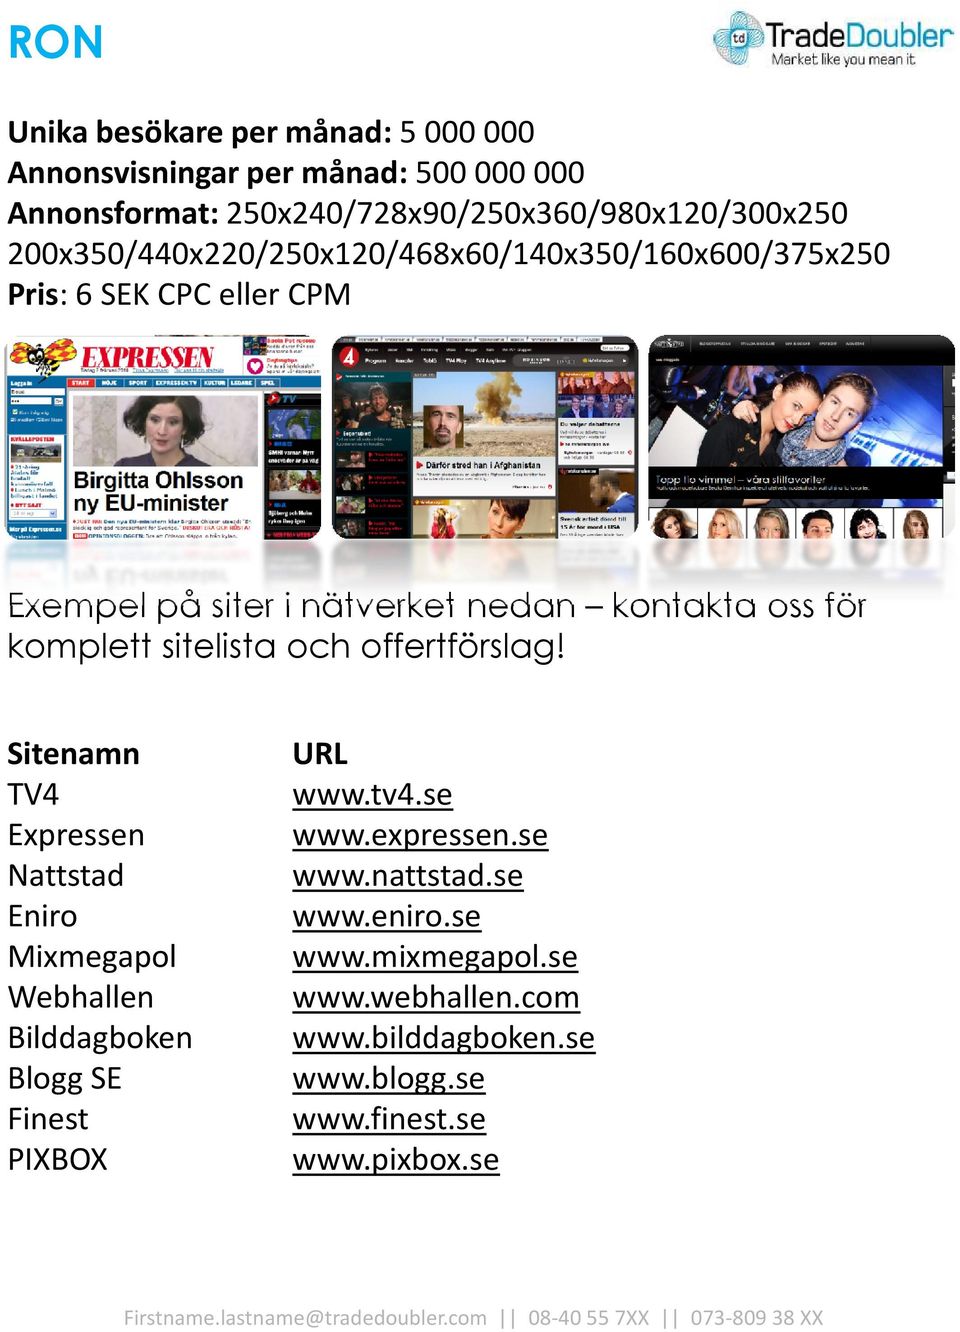 Exempel på siter i nätverket nedan kontakta oss för TV4 Expressen Nattstad Eniro Mixmegapol Webhallen Bilddagboken Blogg SE